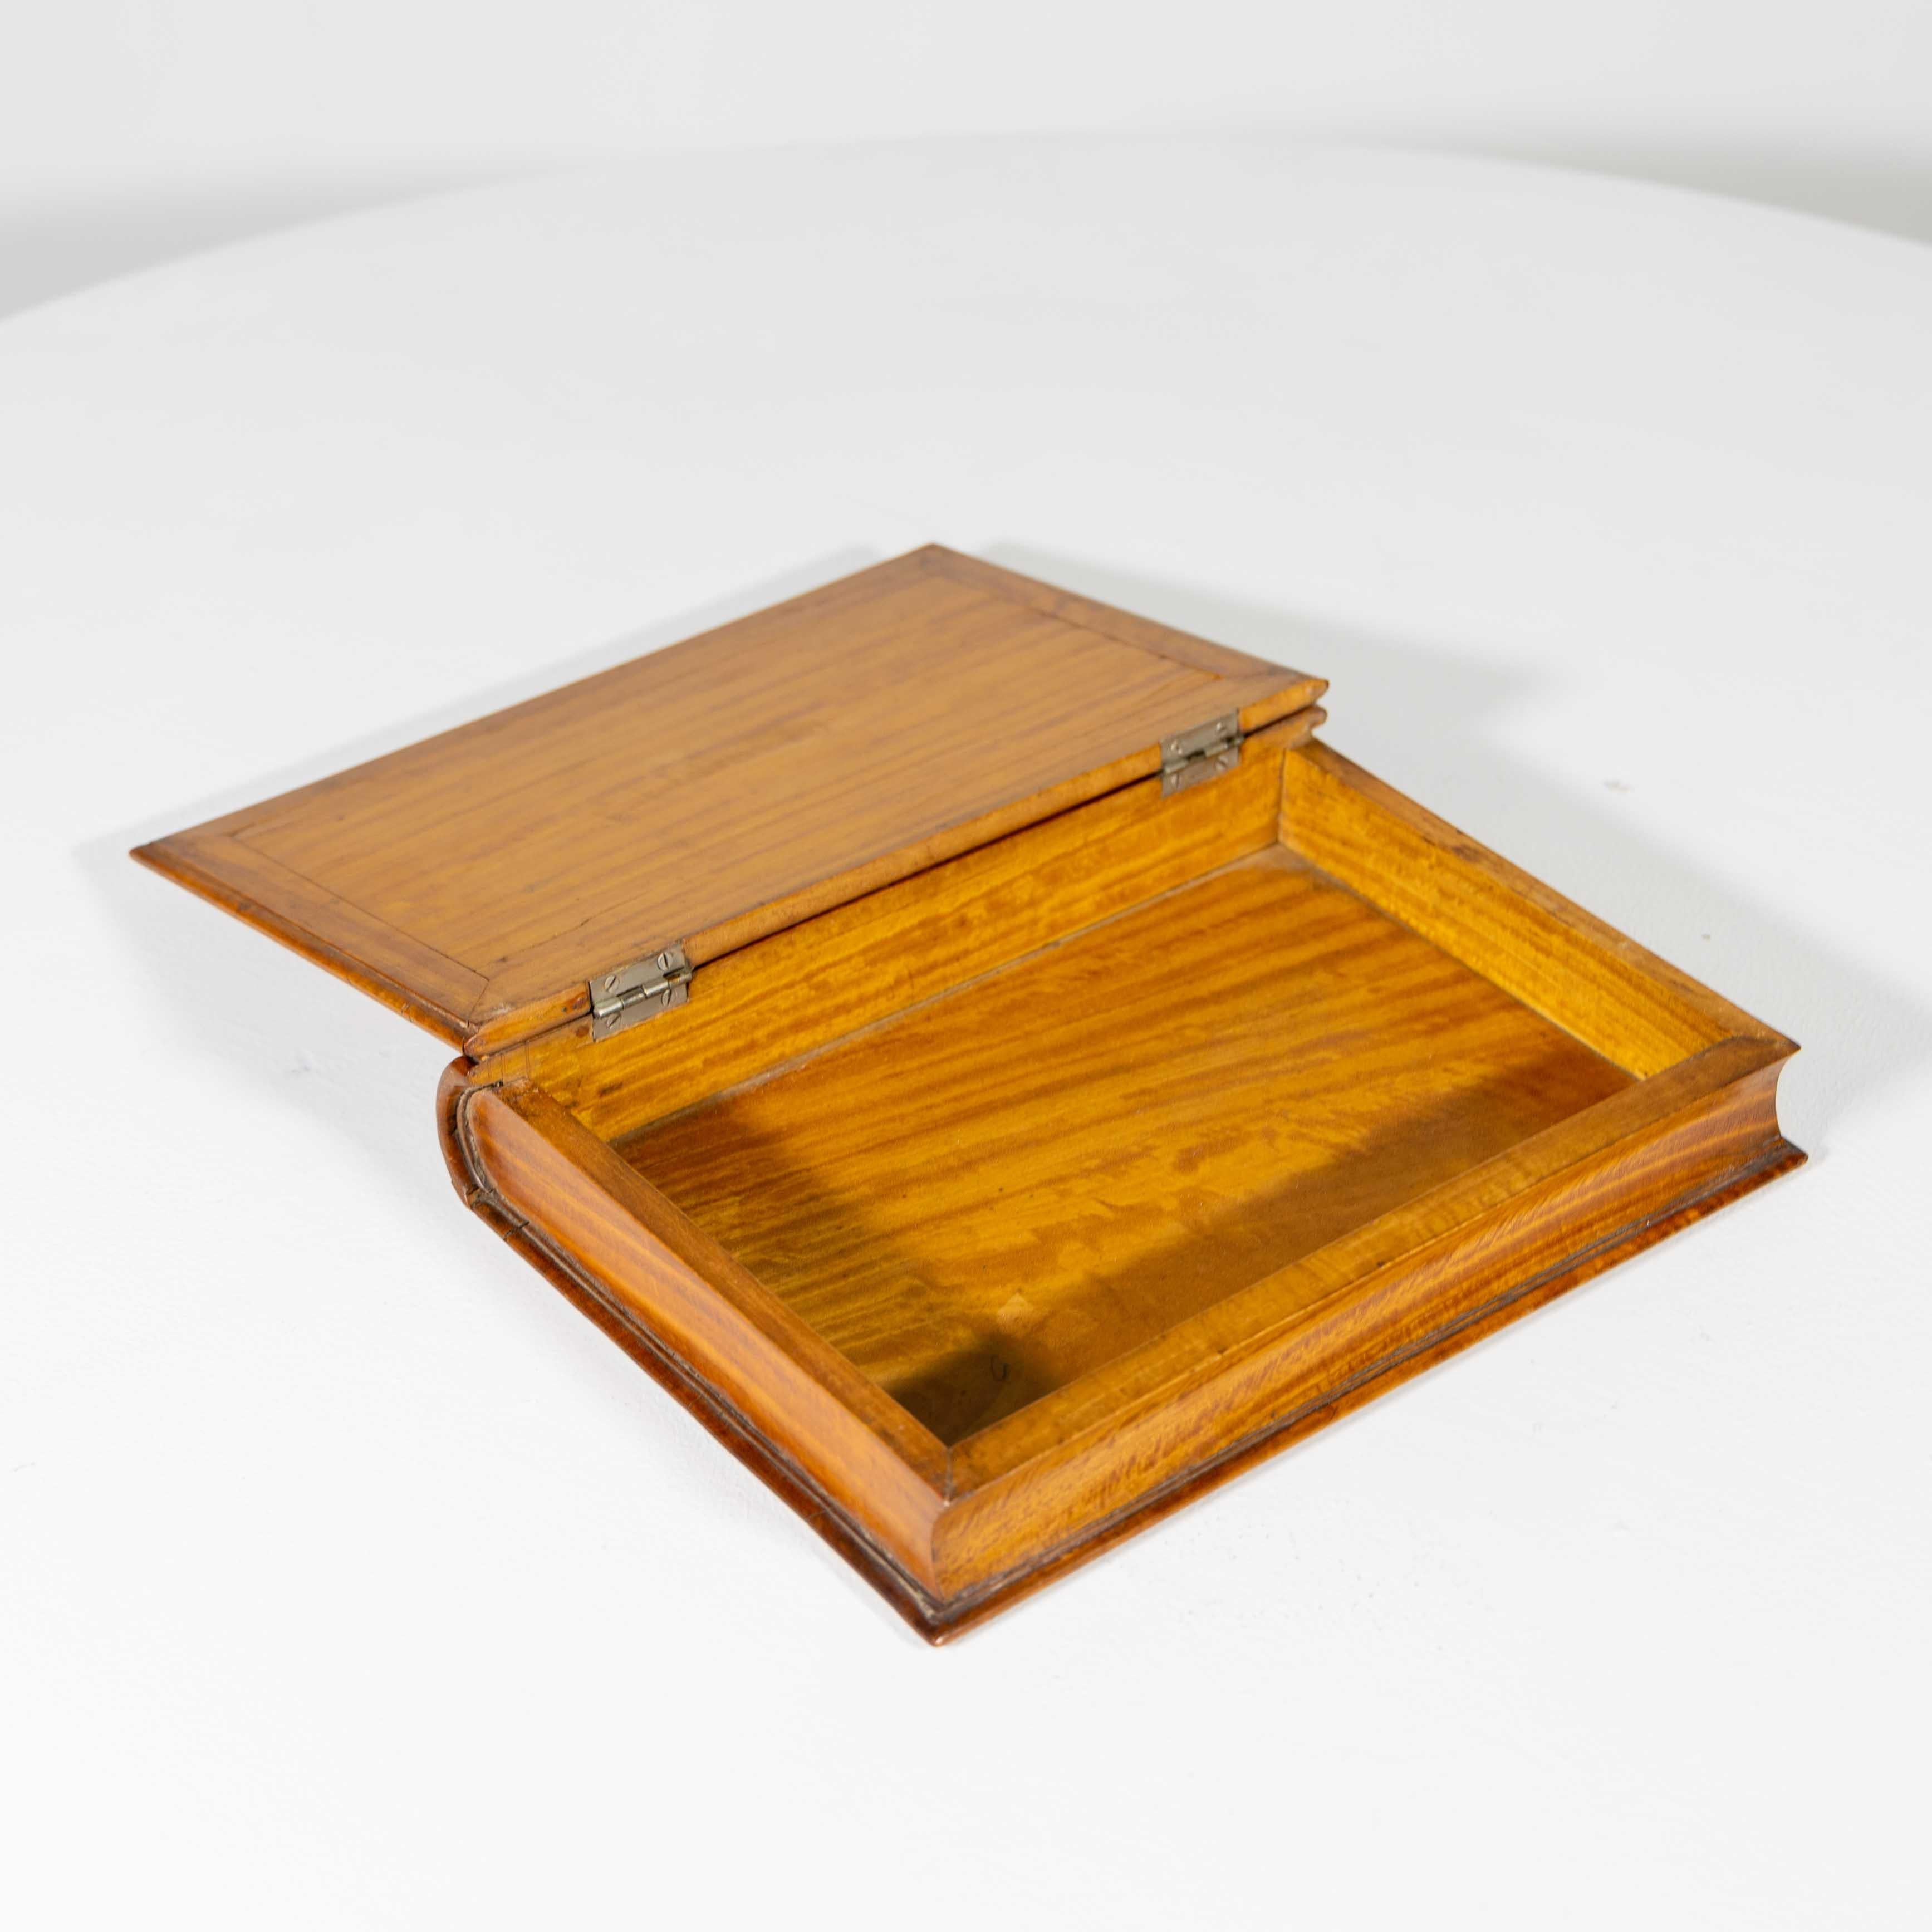 Dekorative, englische Schmuckschatulle aus Zitronenholz in Form eines Buches mit angedeuteten Buchrippen und Fadenintarsien auf dem Scharnierdeckel.